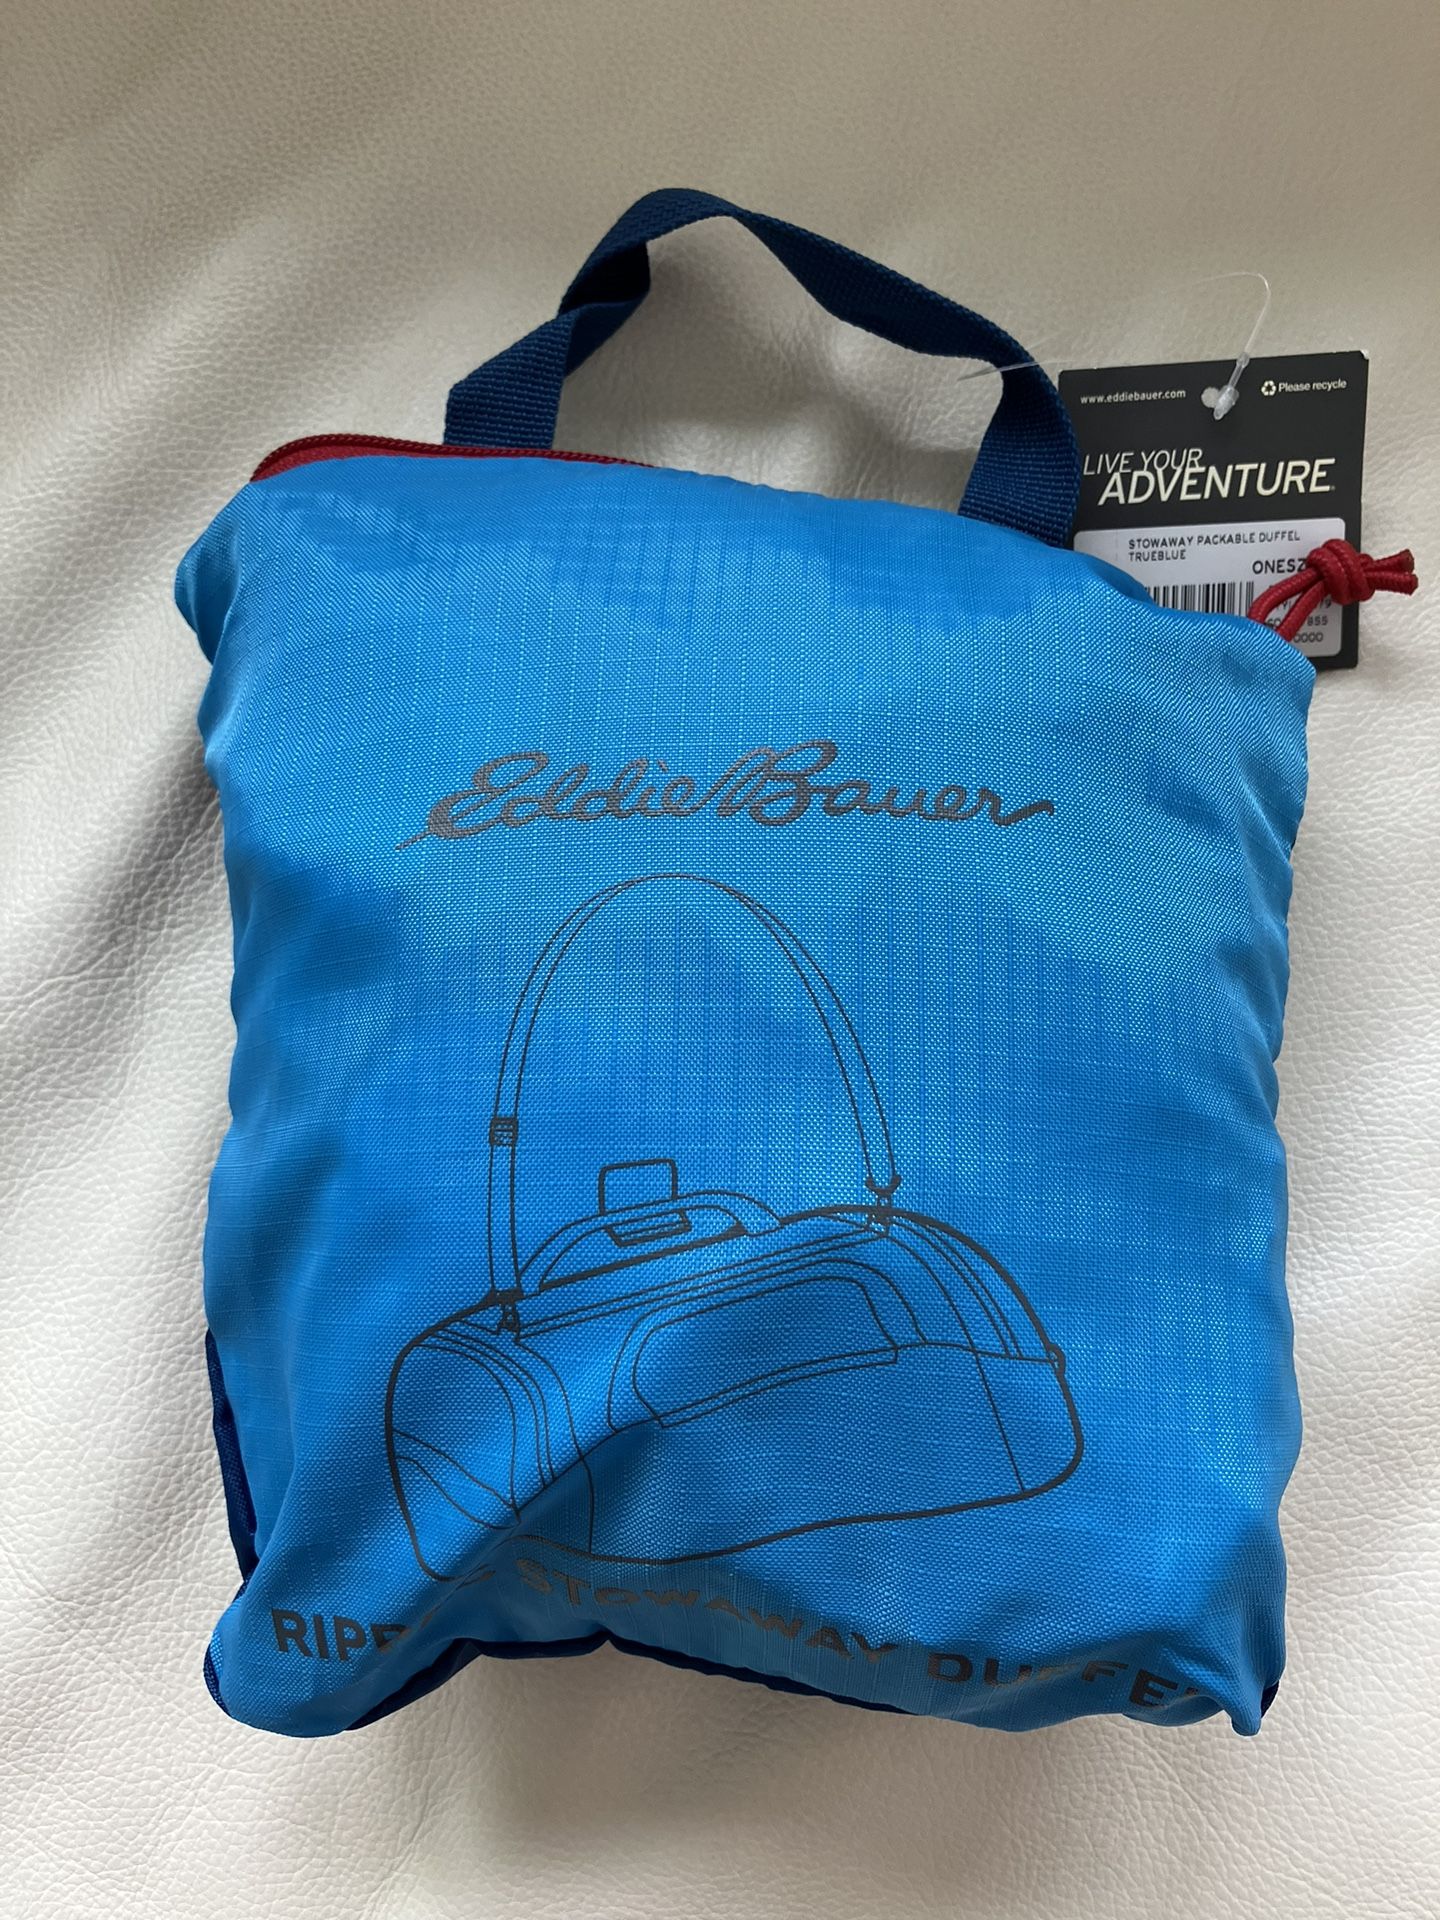 Eddie Bauer Rippac stowaway packable duffle bag NEW color trueblue